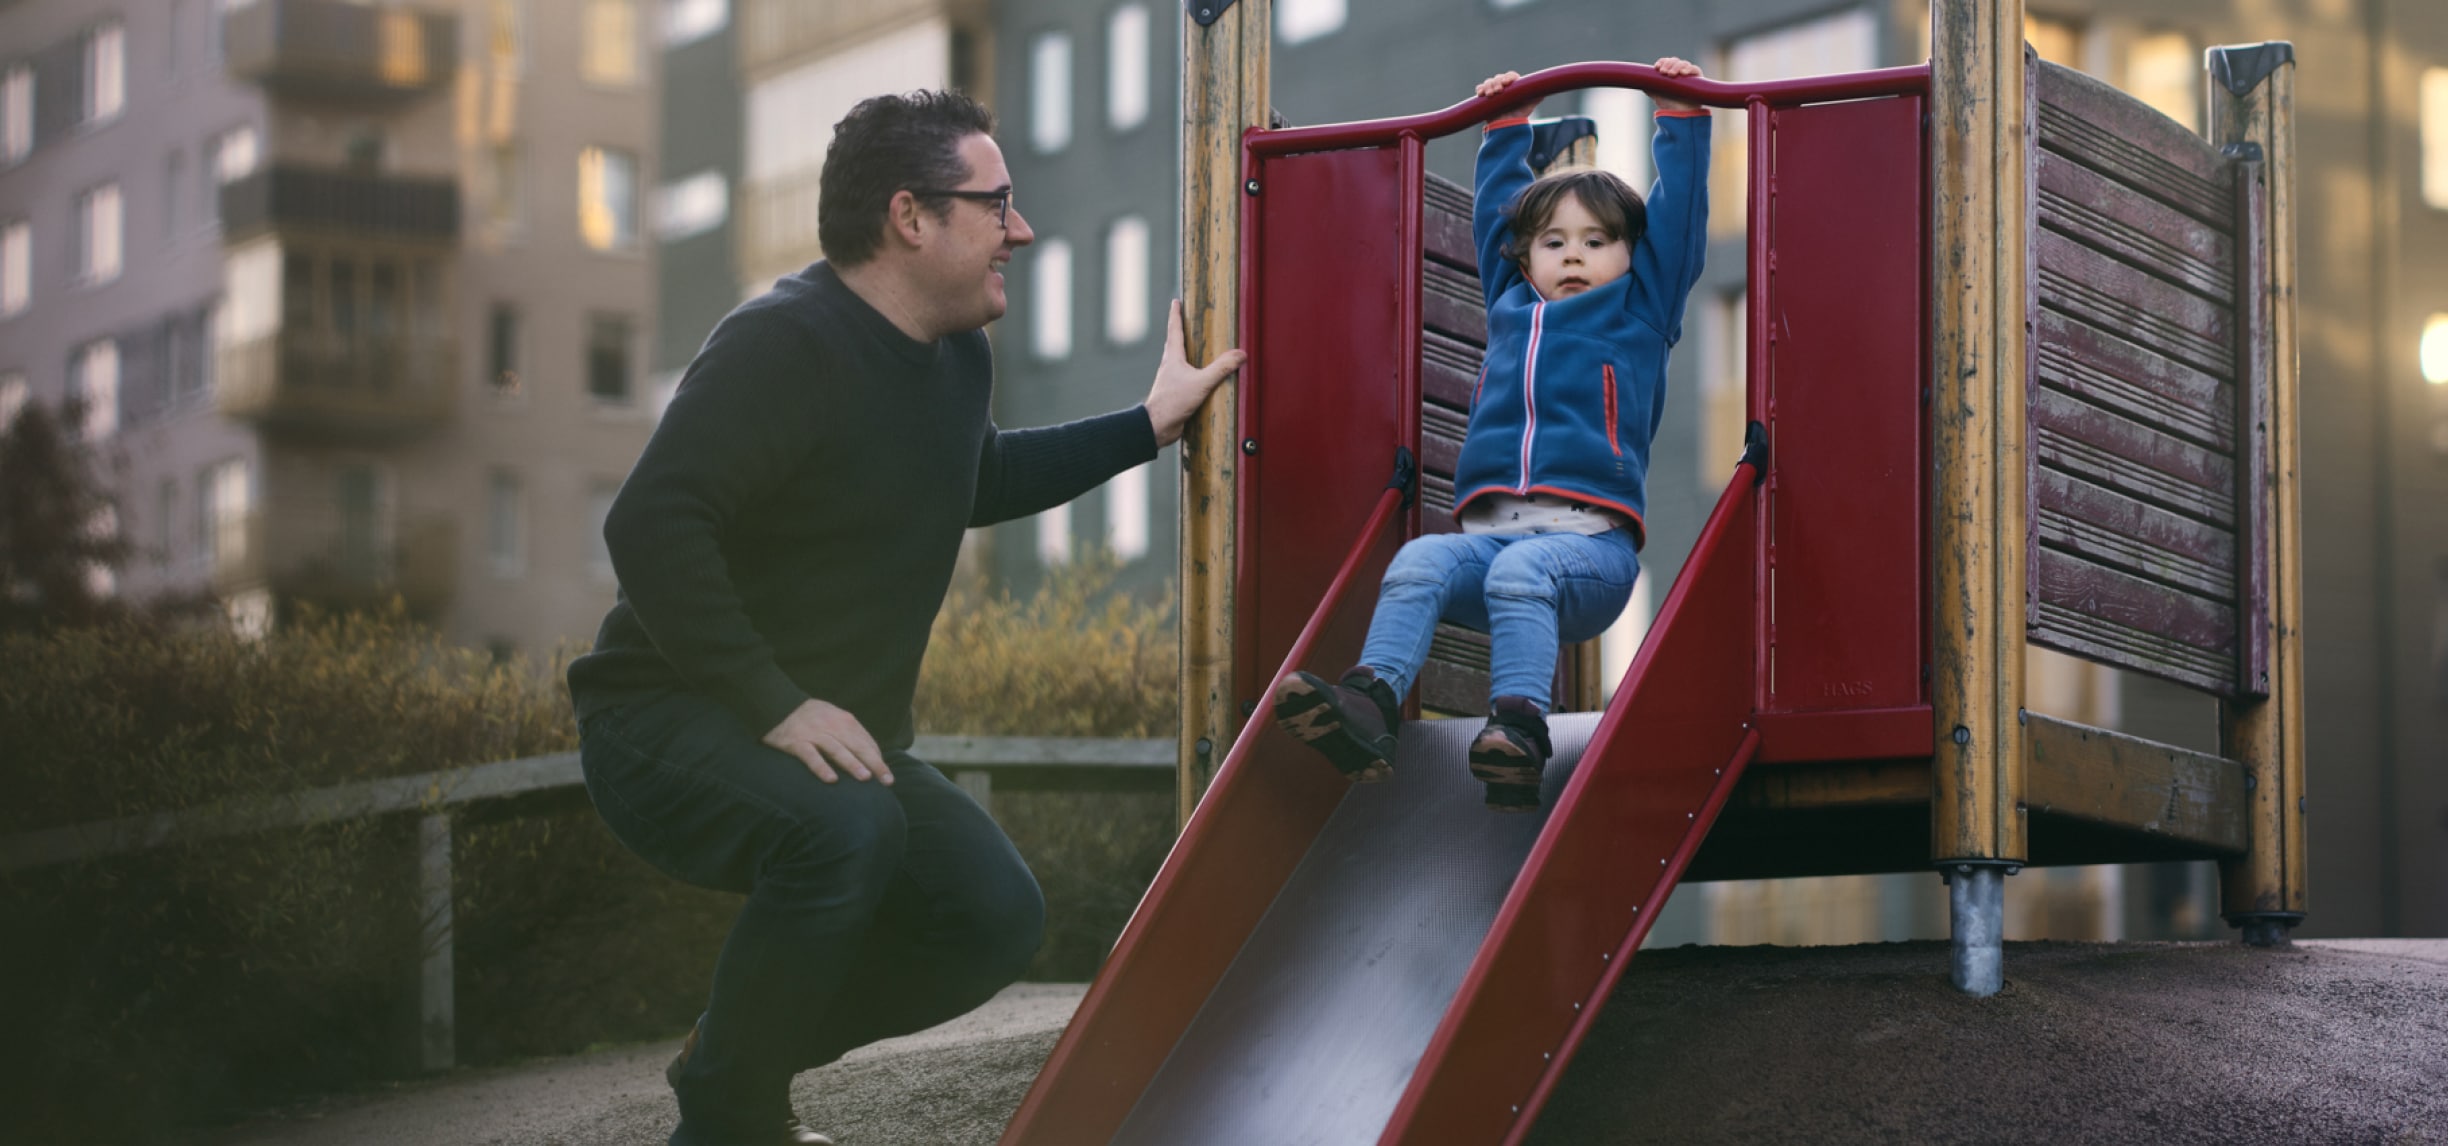 Un homme souriant à un bambin sur une glissade dans une aire de jeu pour enfants.